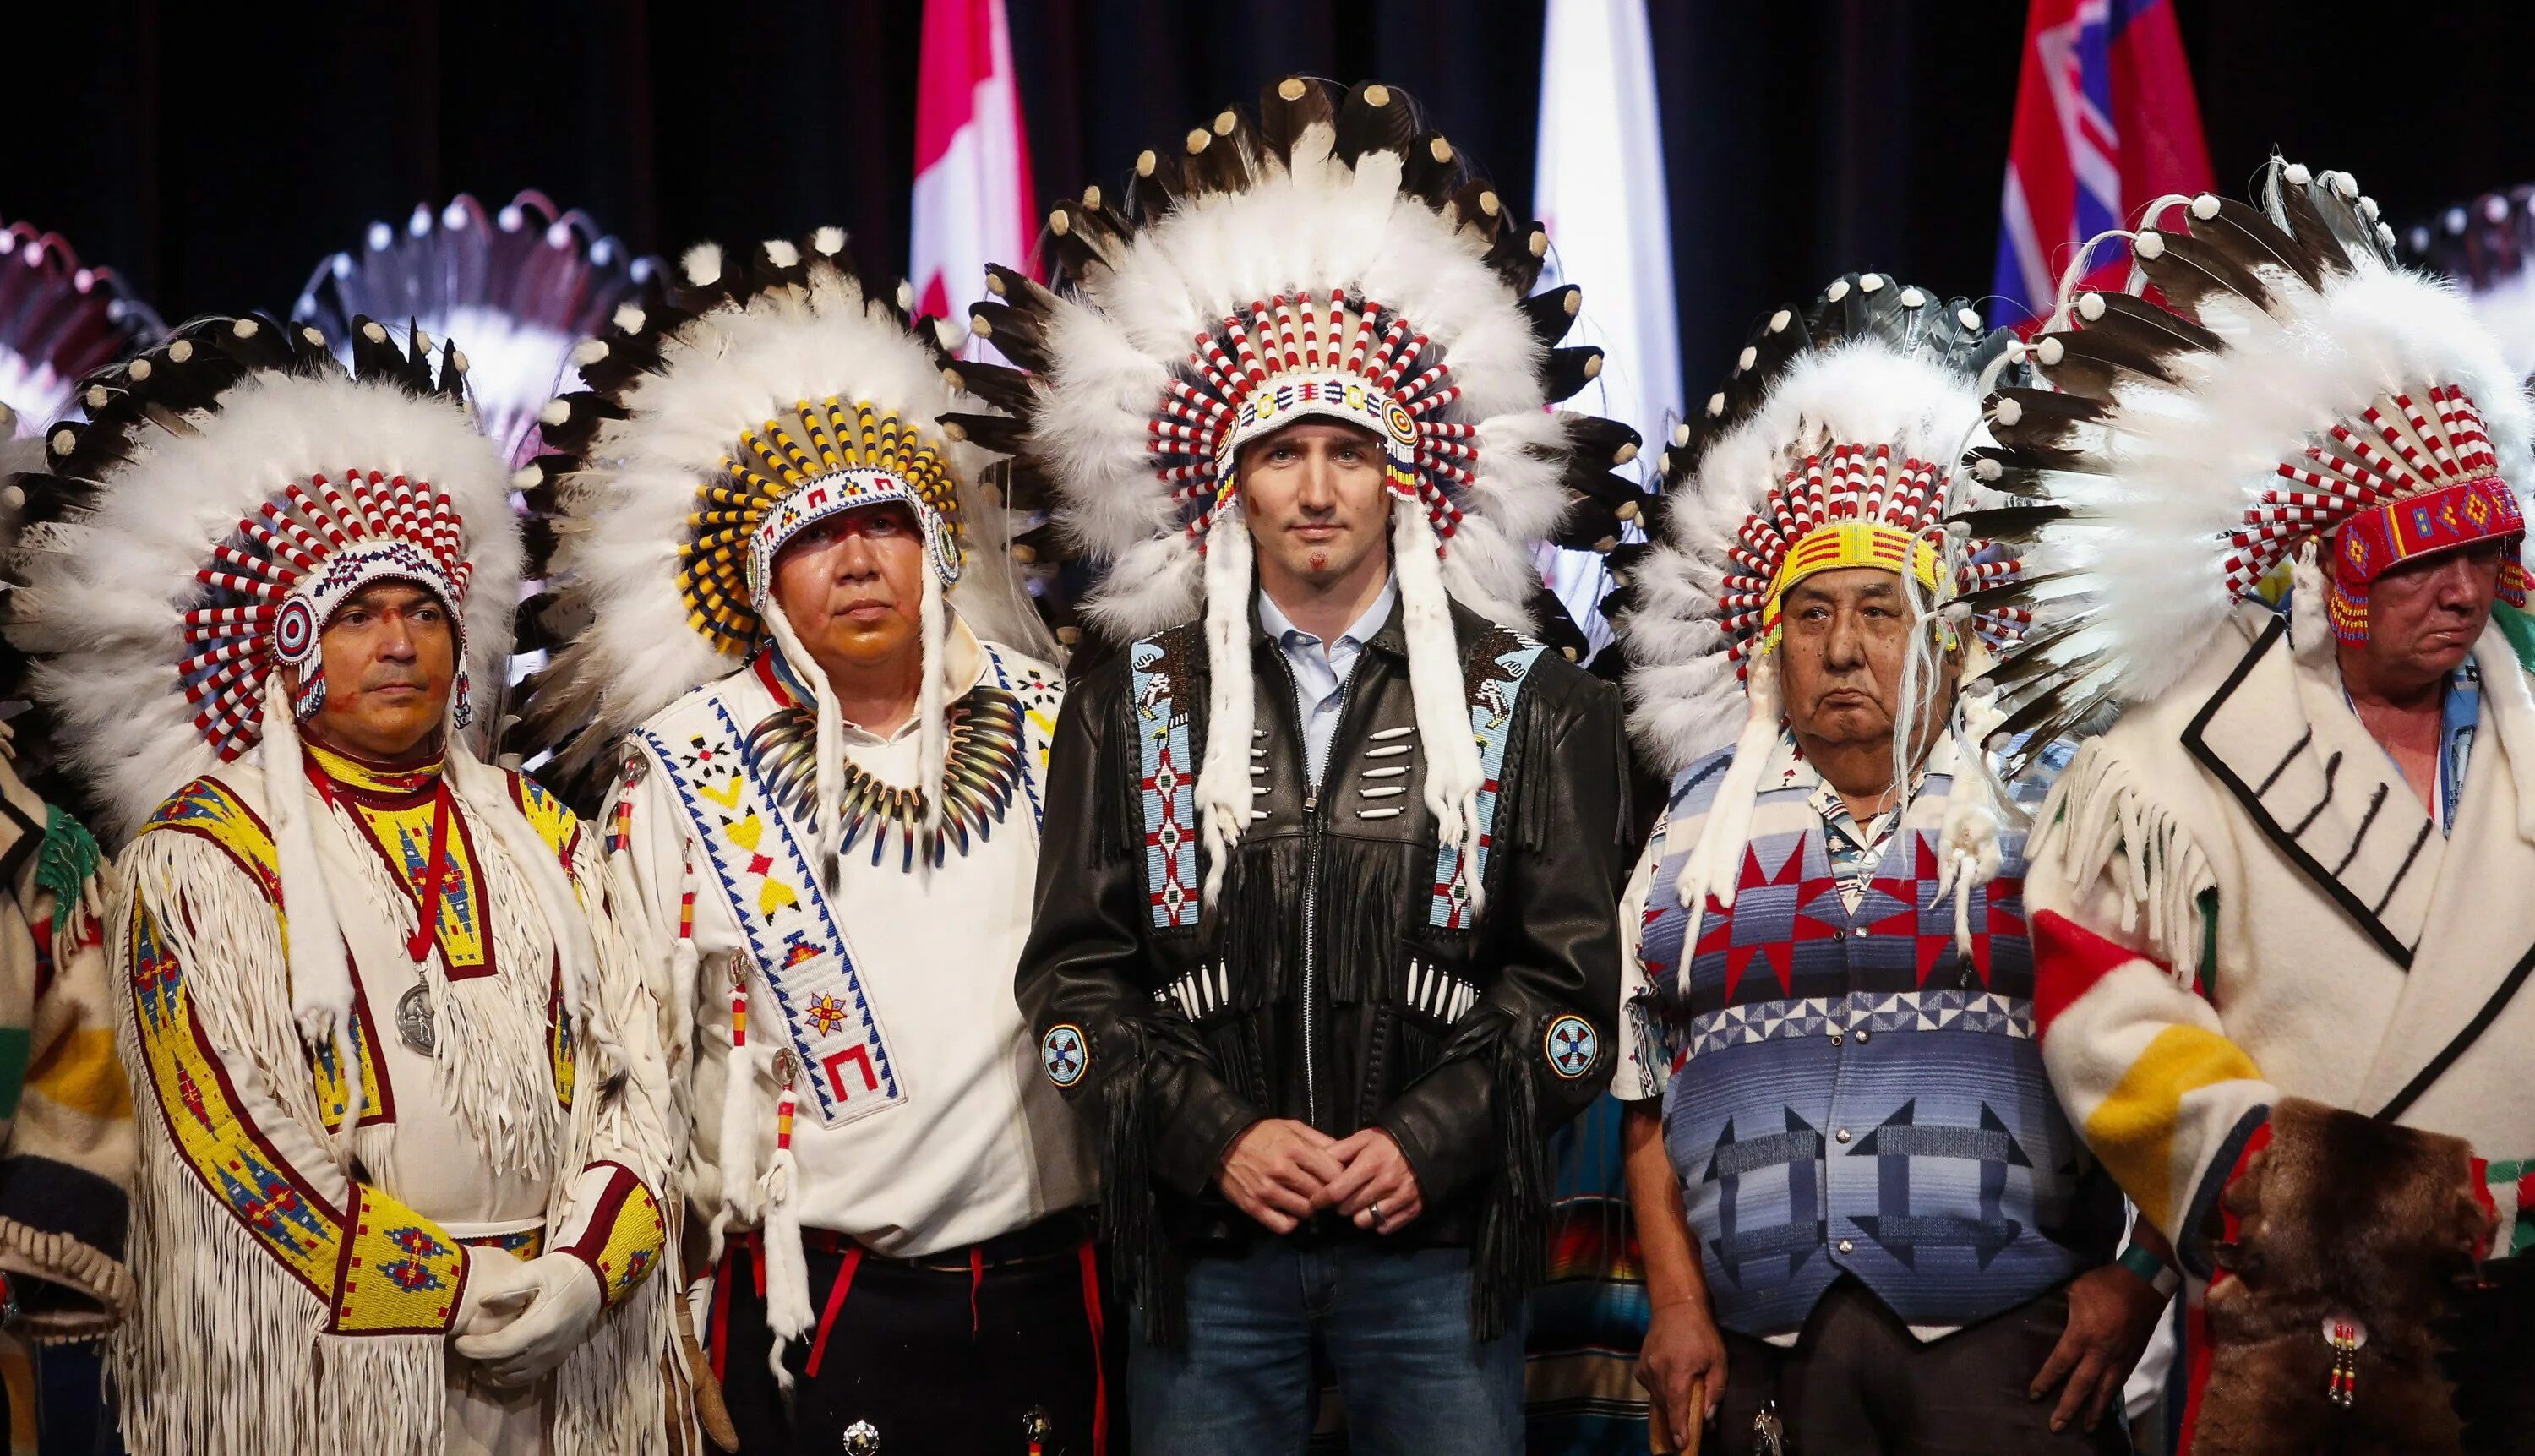 Индейцы Канады народы Канады. Канада индейцы алеуты. Северные индейцы Канады. Коренные жители Канады индейцы. Коренное население северной америки эскимосы и индейцы